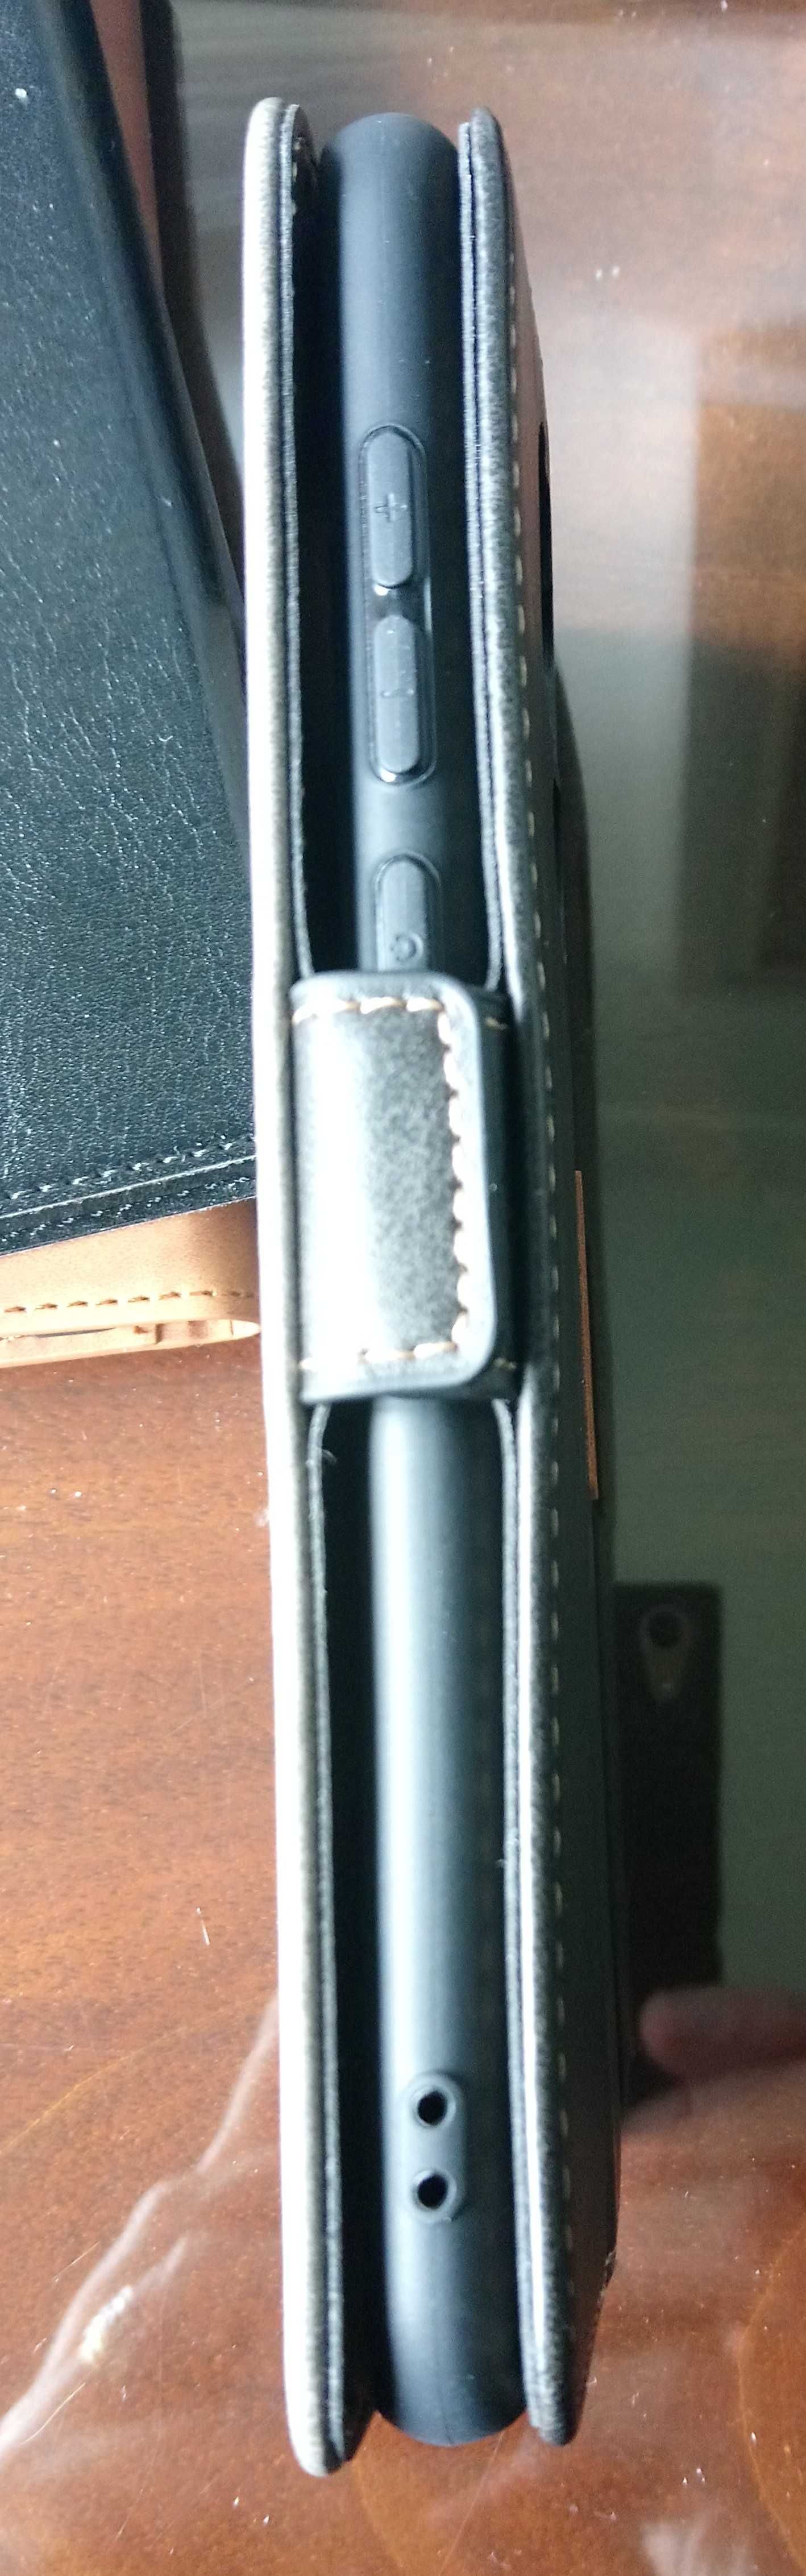 Redmi Note 9 nova